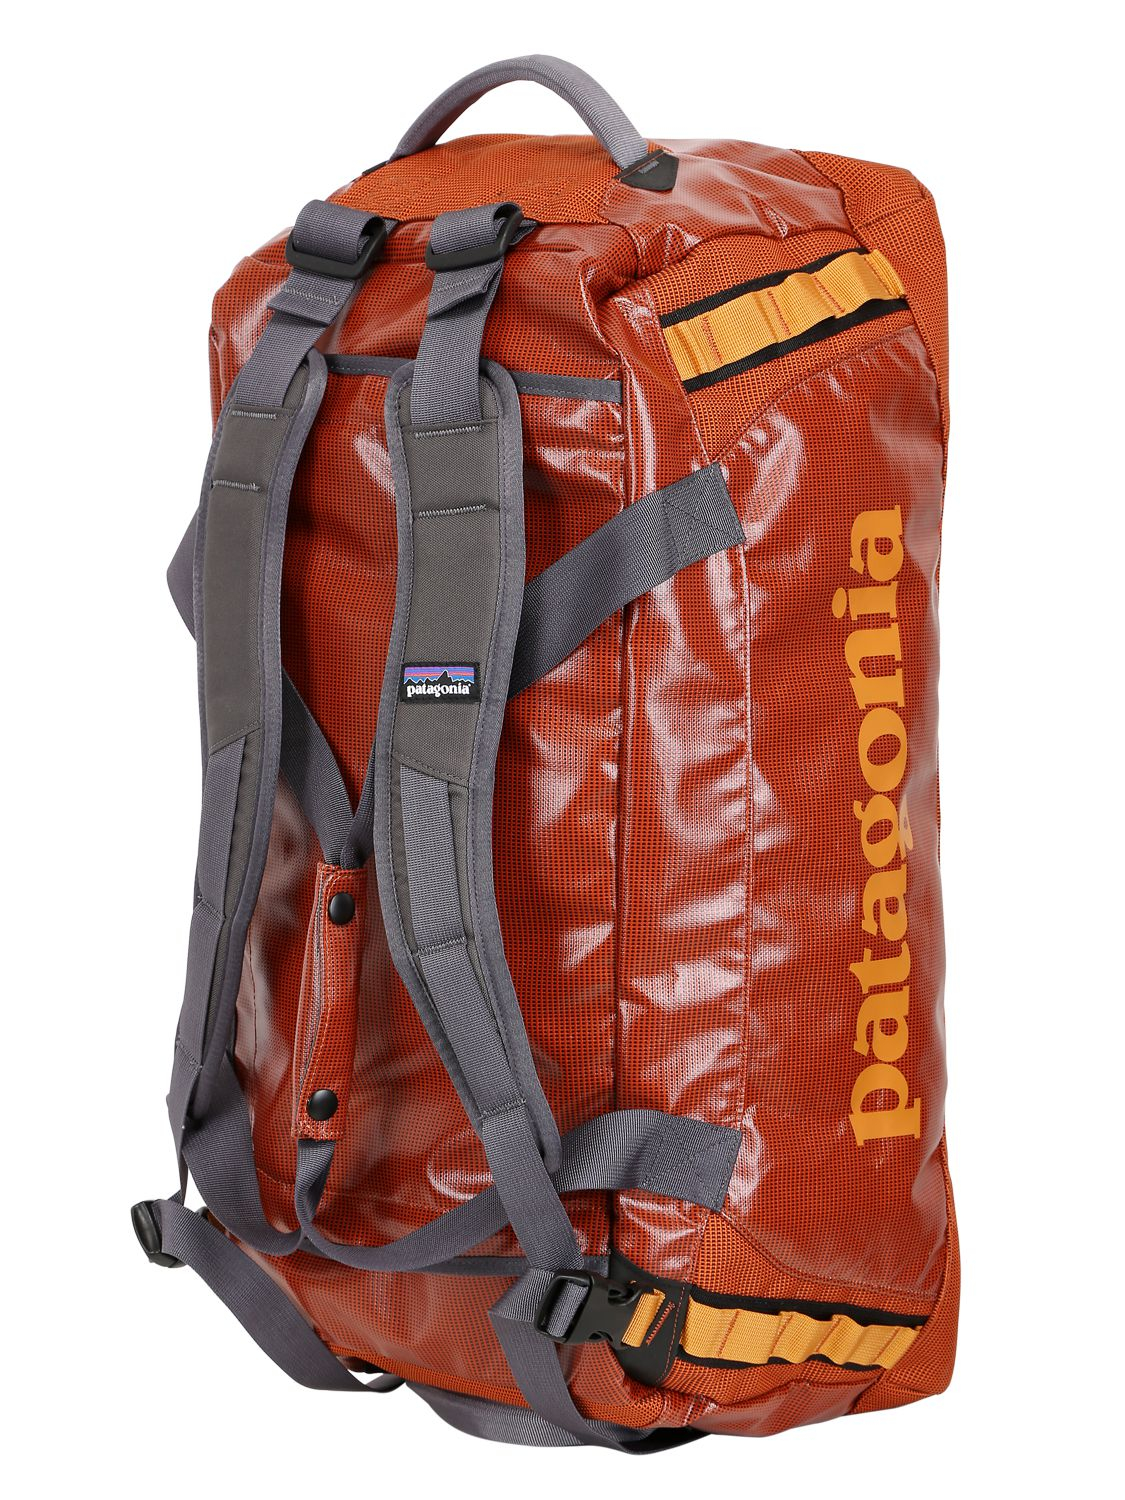 patagonia travel backpack duffel